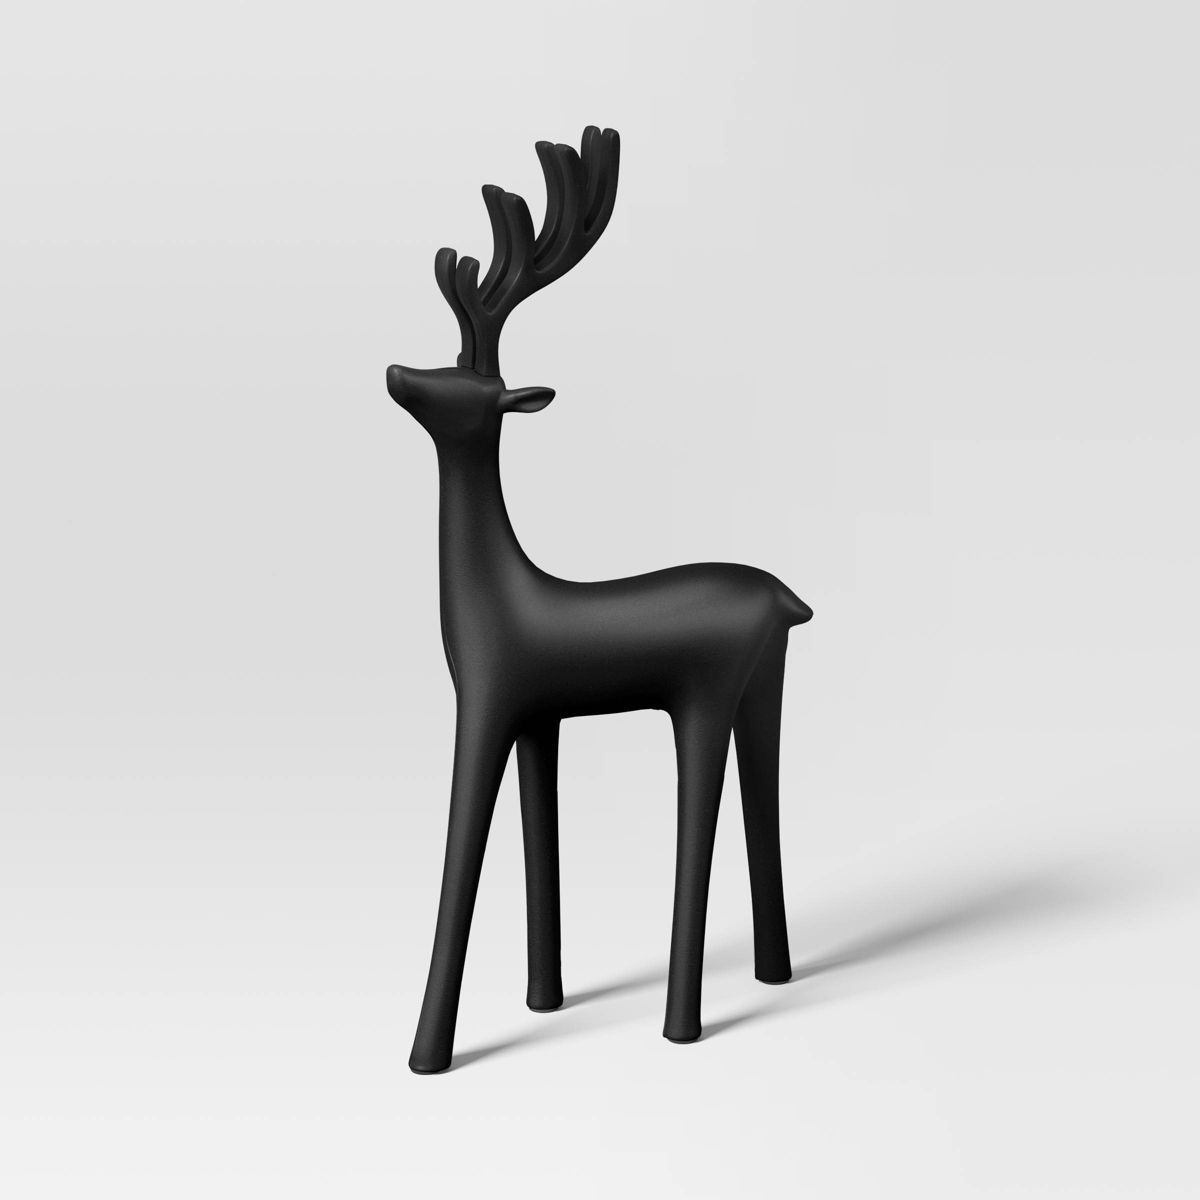 14" Deer Looking Forward Animal Christmas Statue - Wondershop™ Black | Target